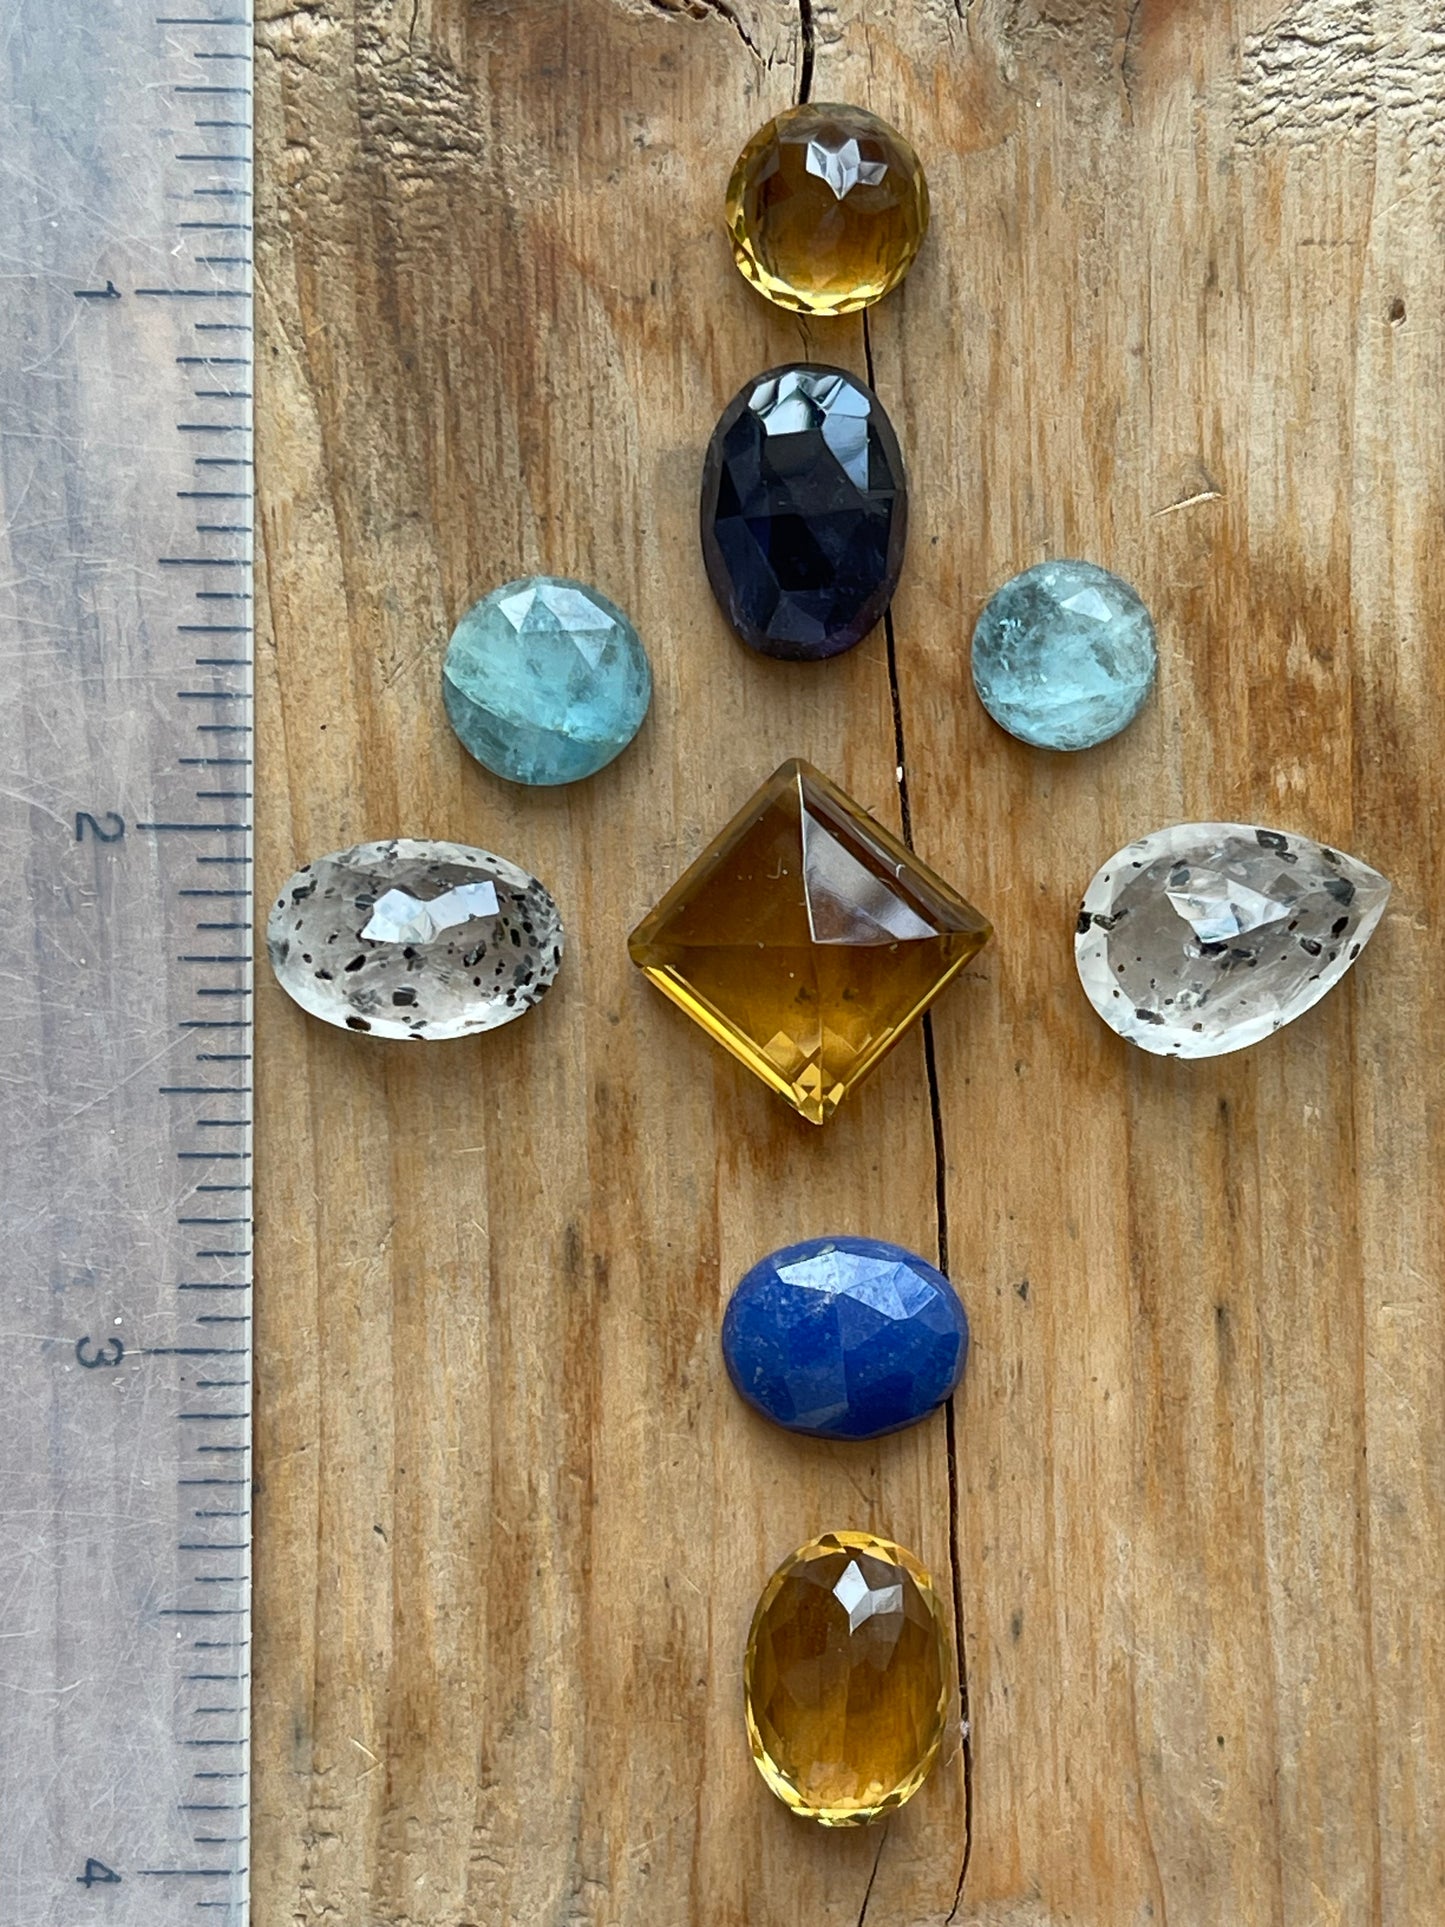 Gemstone Collection 32: Citrine, Aquamarine, Lapis Lazuli, Iolite - 46CT